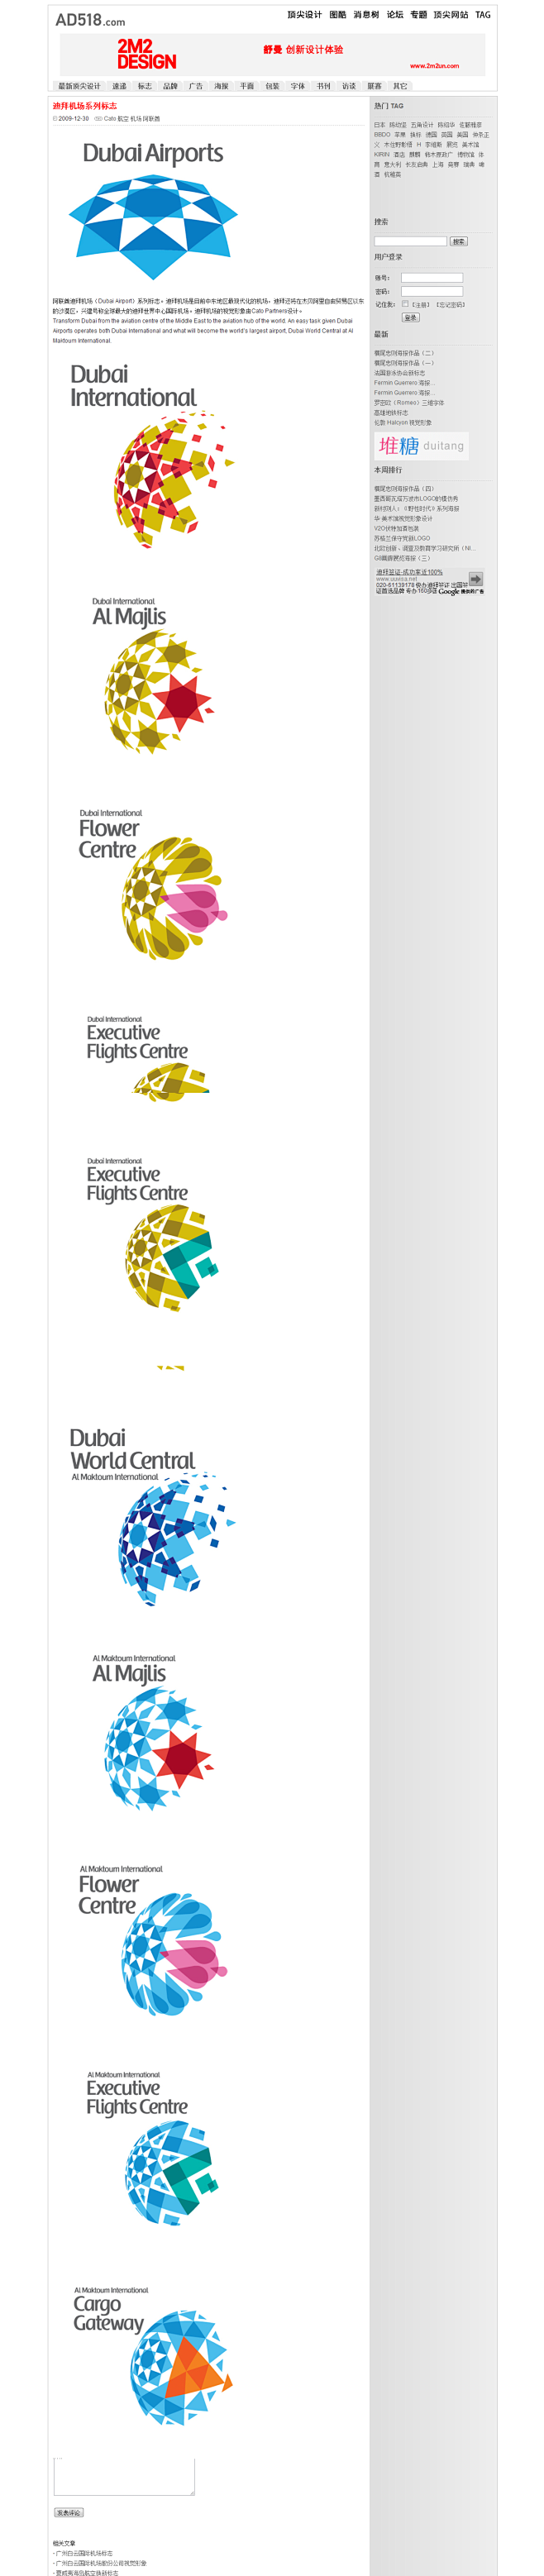 迪拜机场系列标志 - 标志 - 顶尖设计...